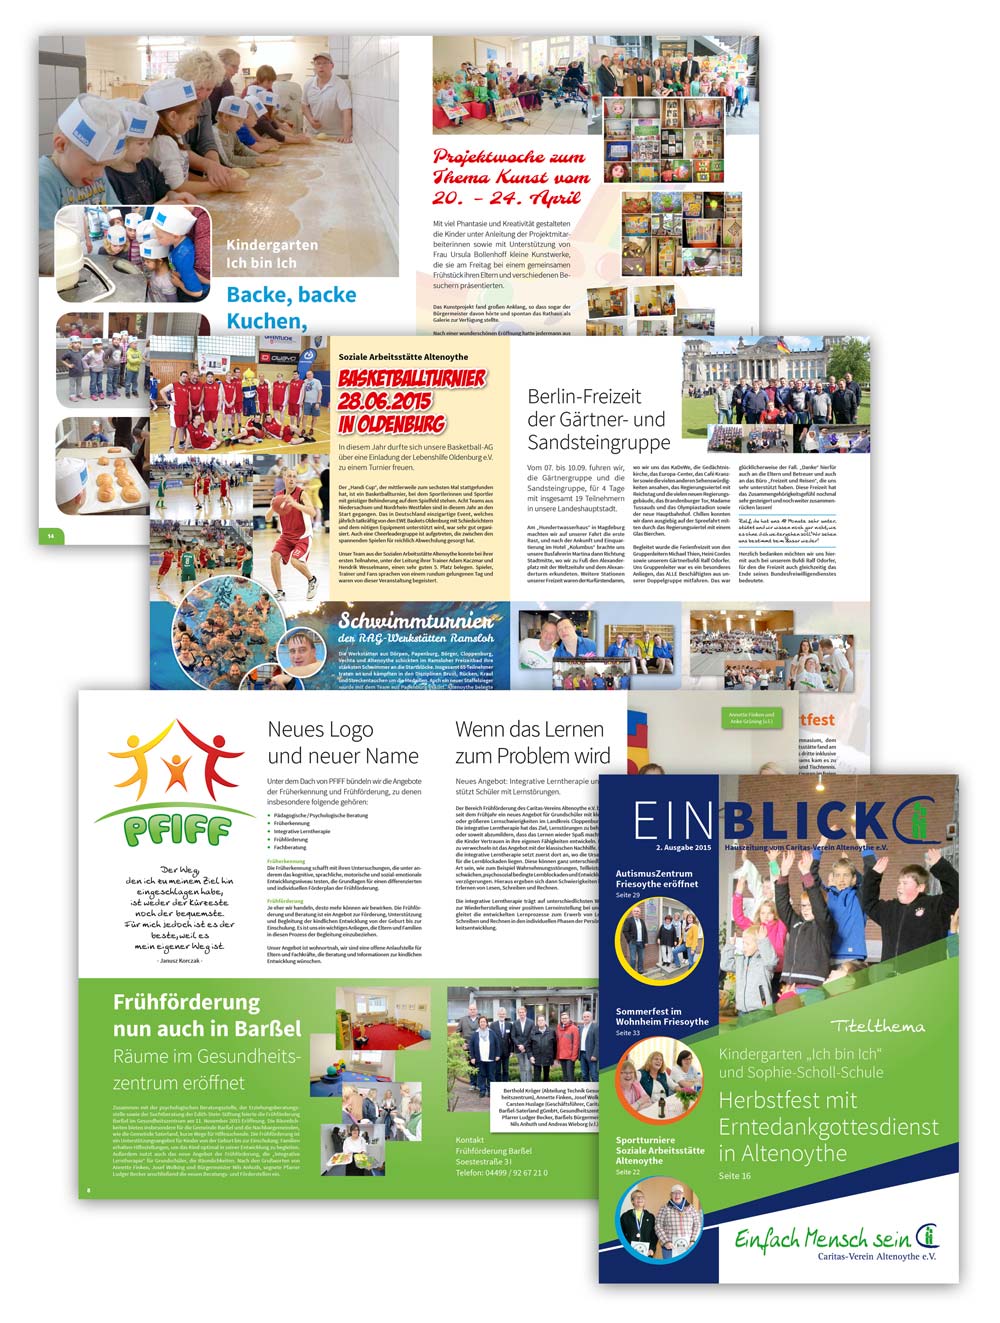 Design der Hauszeitung Einblick für den Caritas-Verein Altenoythe, 1. Ausgabe 2015